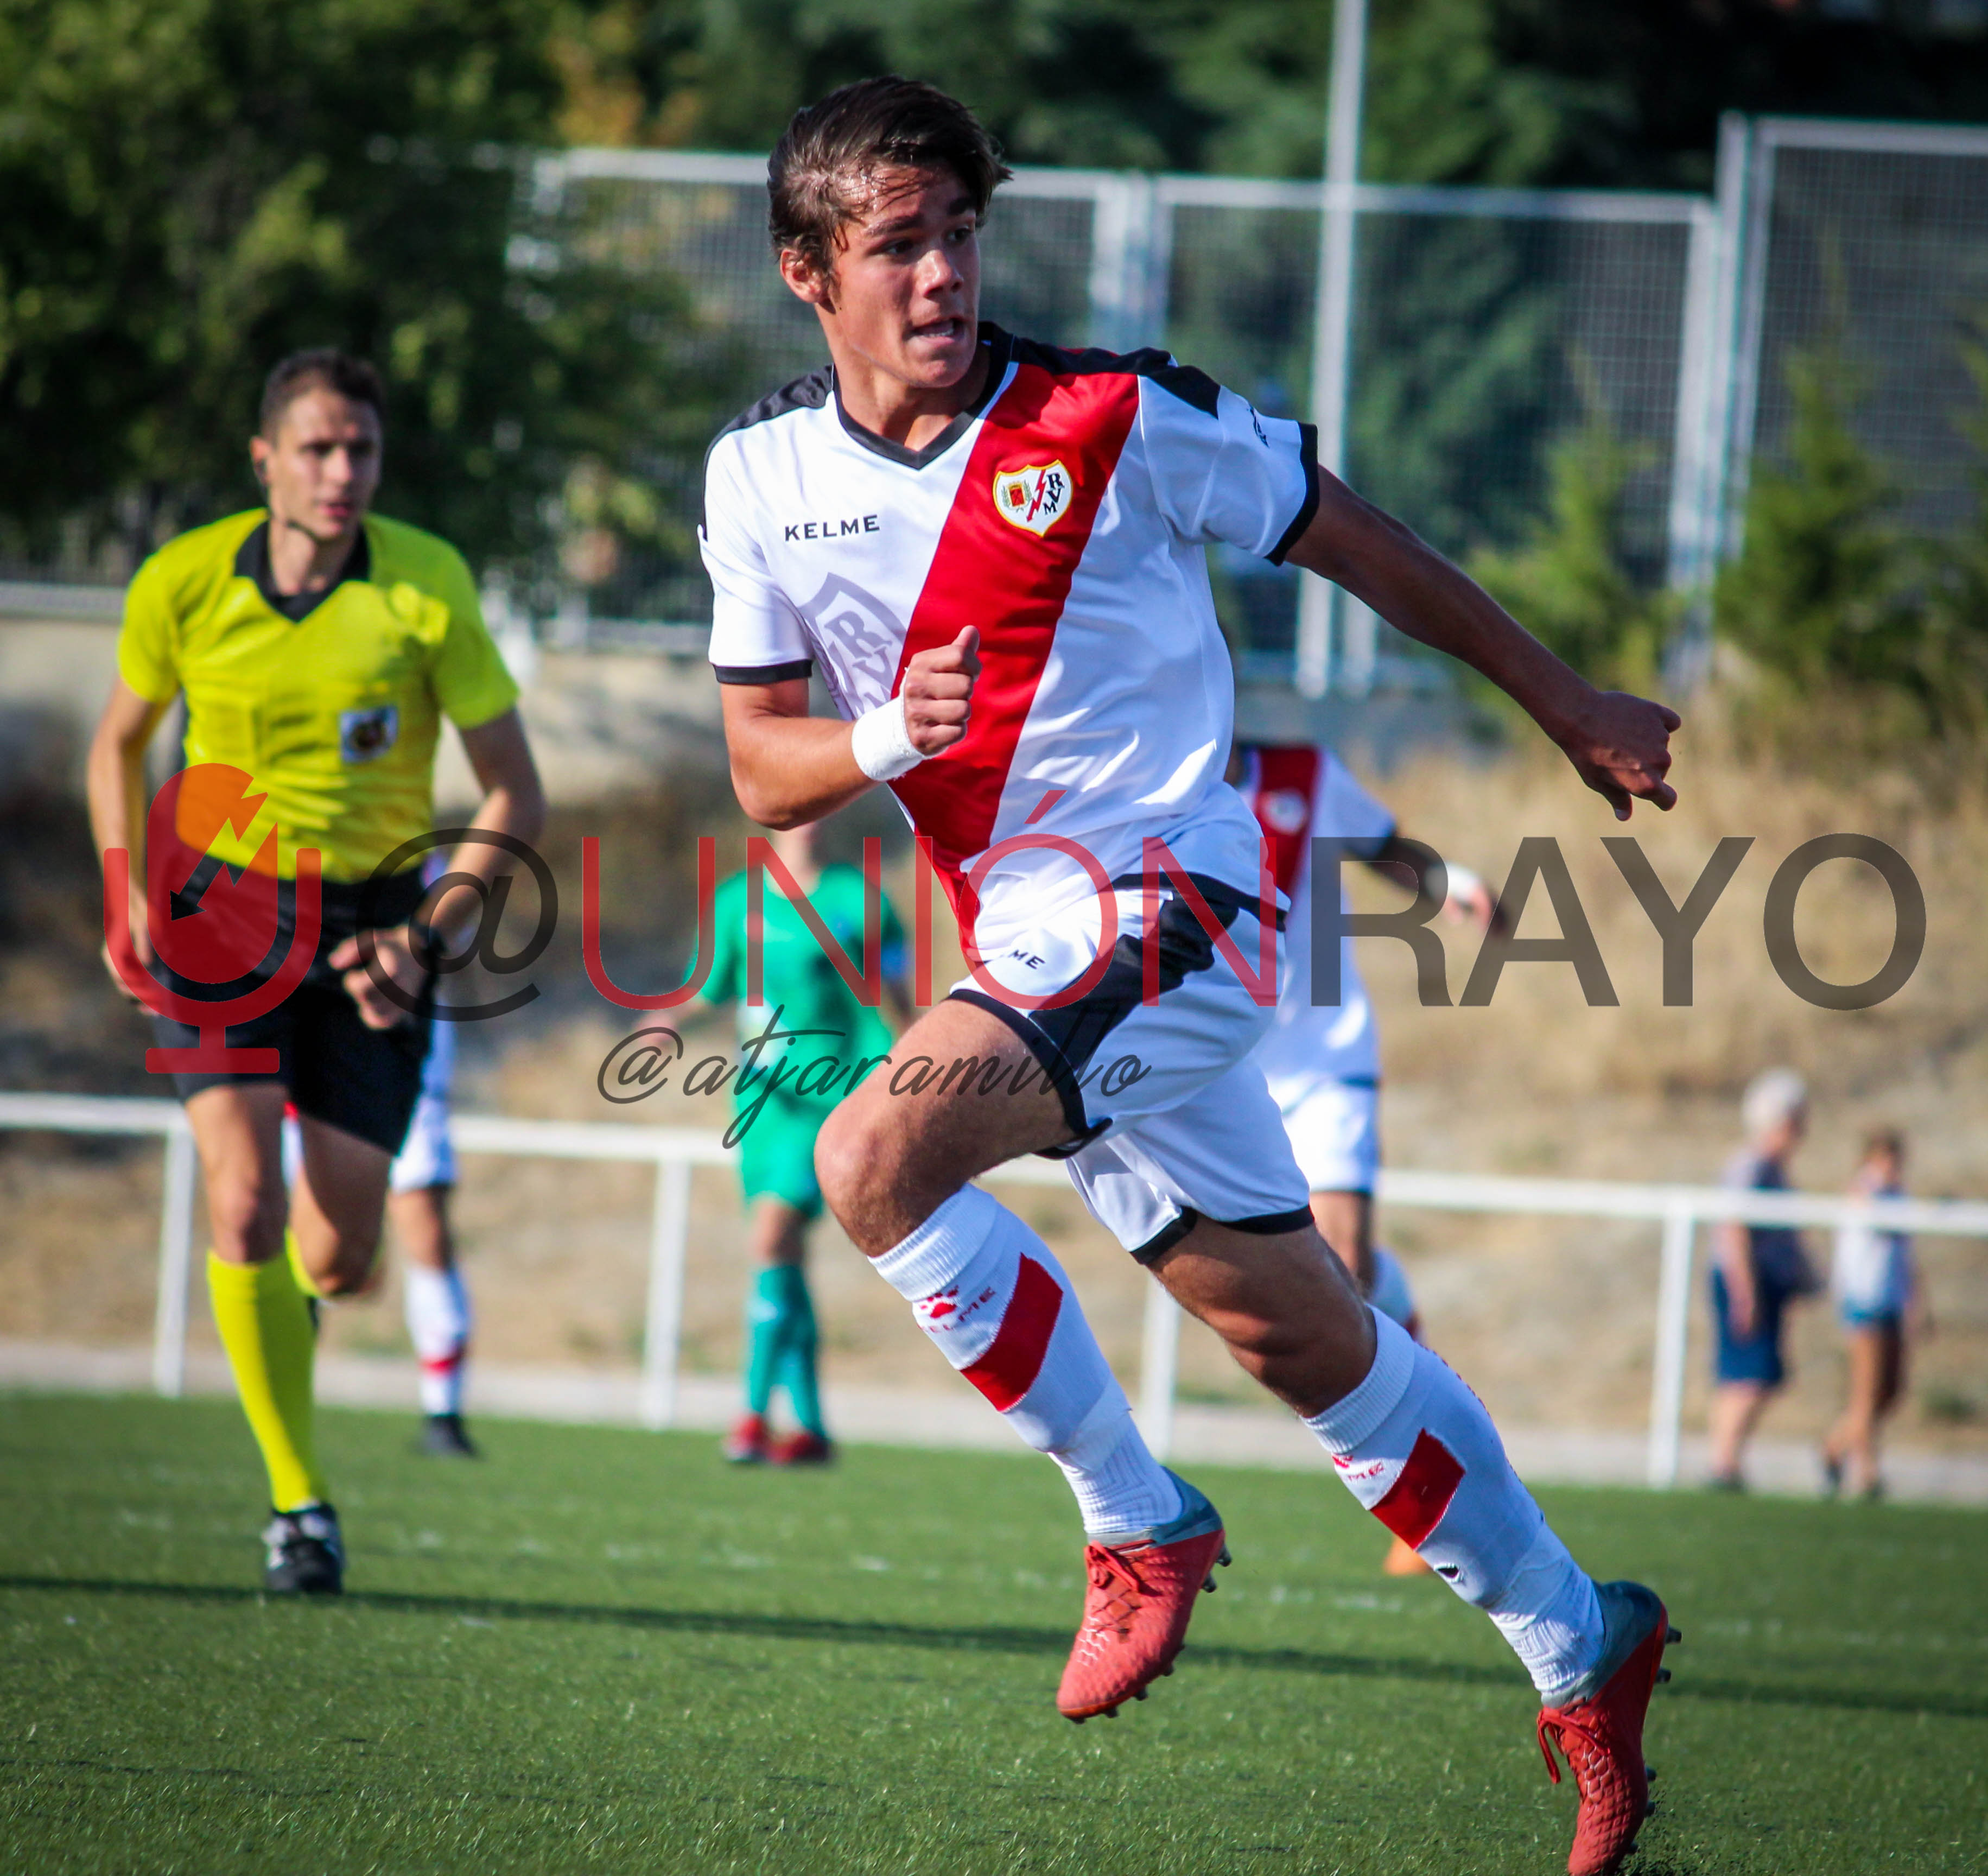 Juvenil A 1-0 Aravaca (2018-2019)